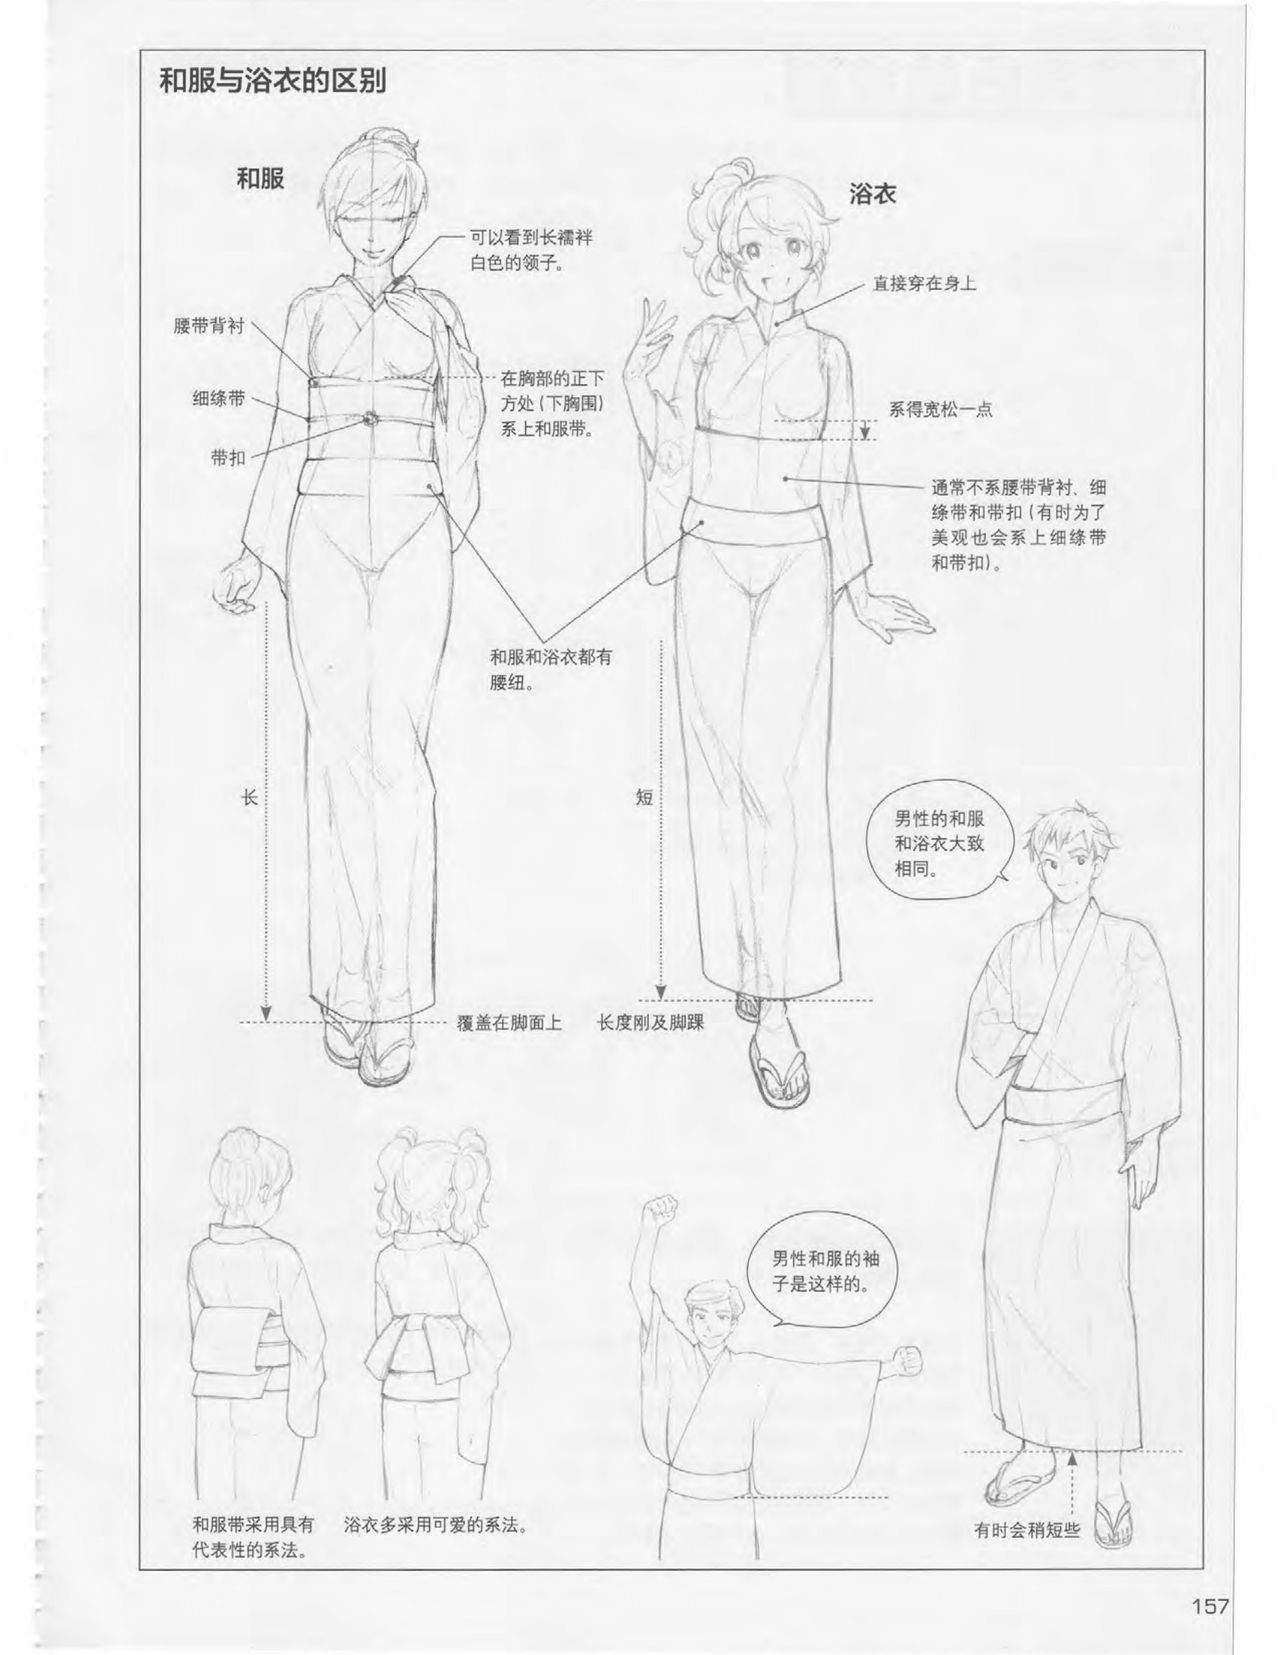 Japanese Manga Master Lecture 3: Lin Akira and Kakumaru Maru Talk About Glamorous Character Modeling 156